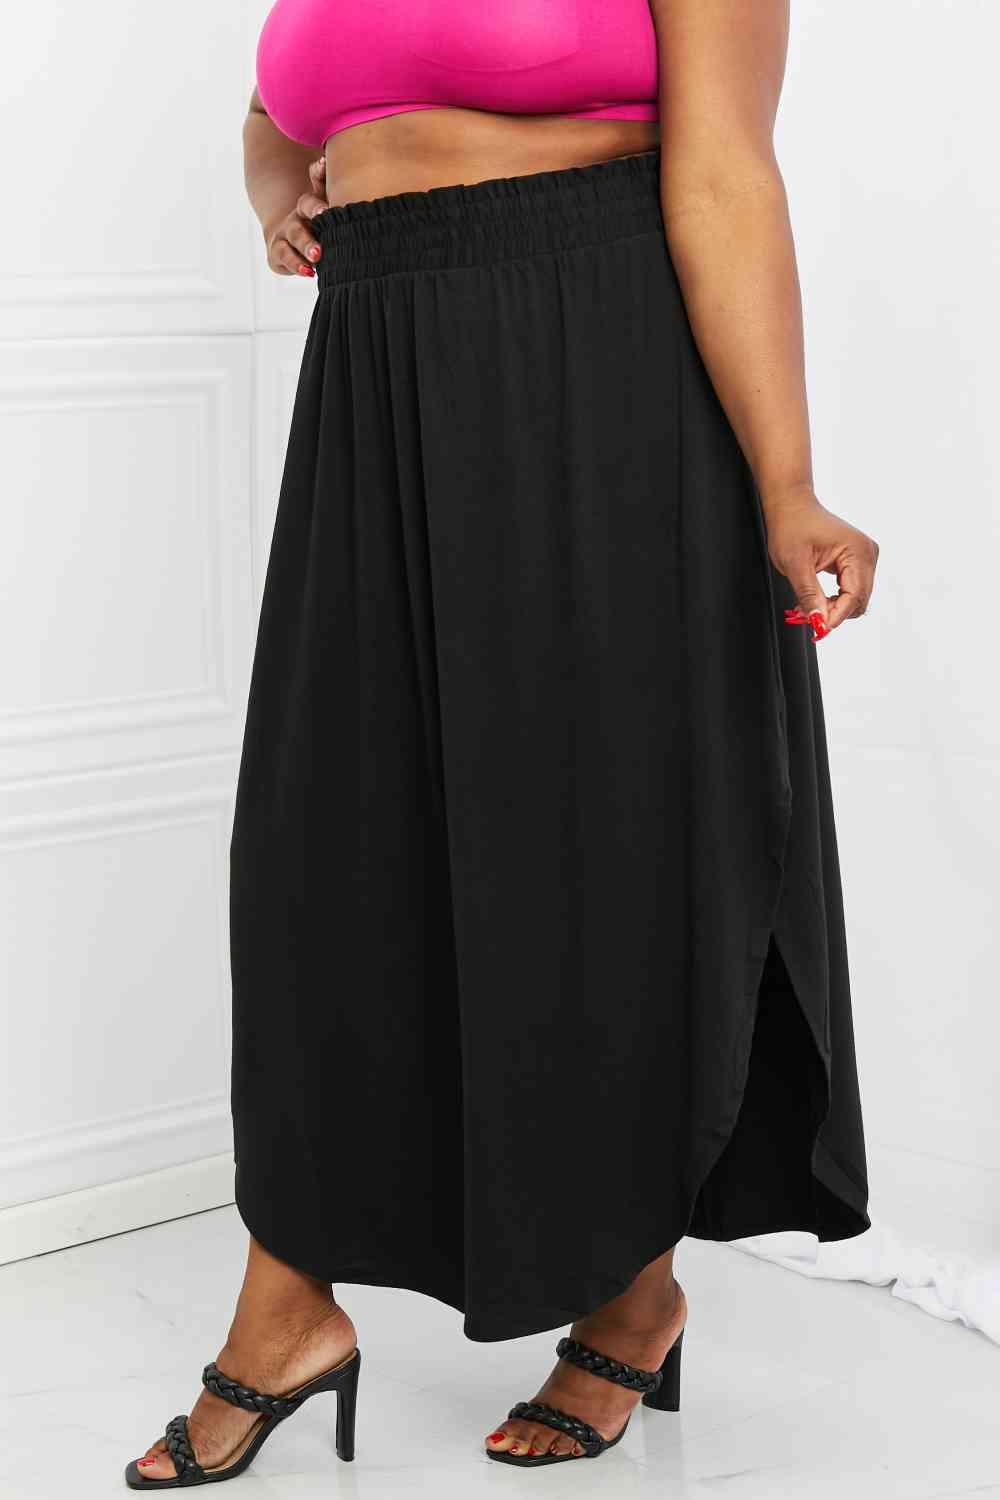 Zenana It's My Time Full Size Side Scoop Scrunch Skirt in Black - Immenzive